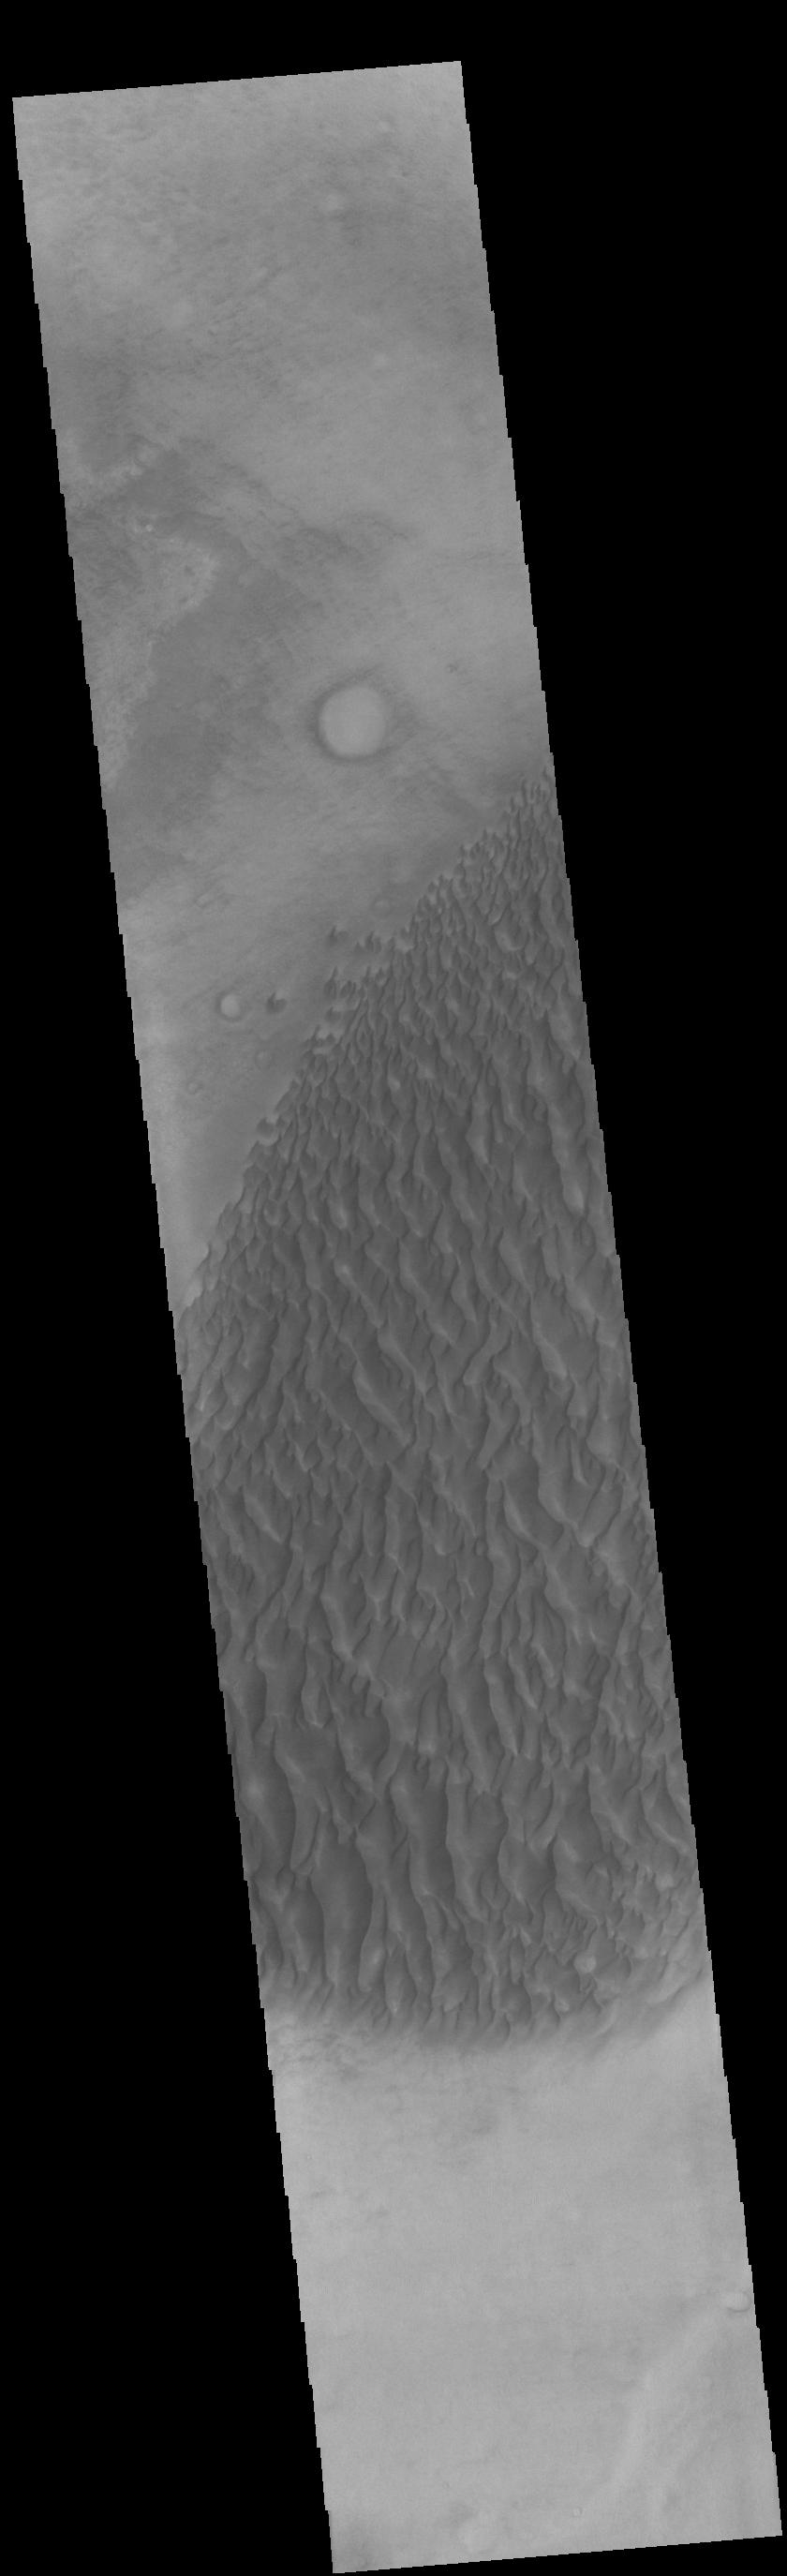 PIA24142: Proctor Crater Dunes